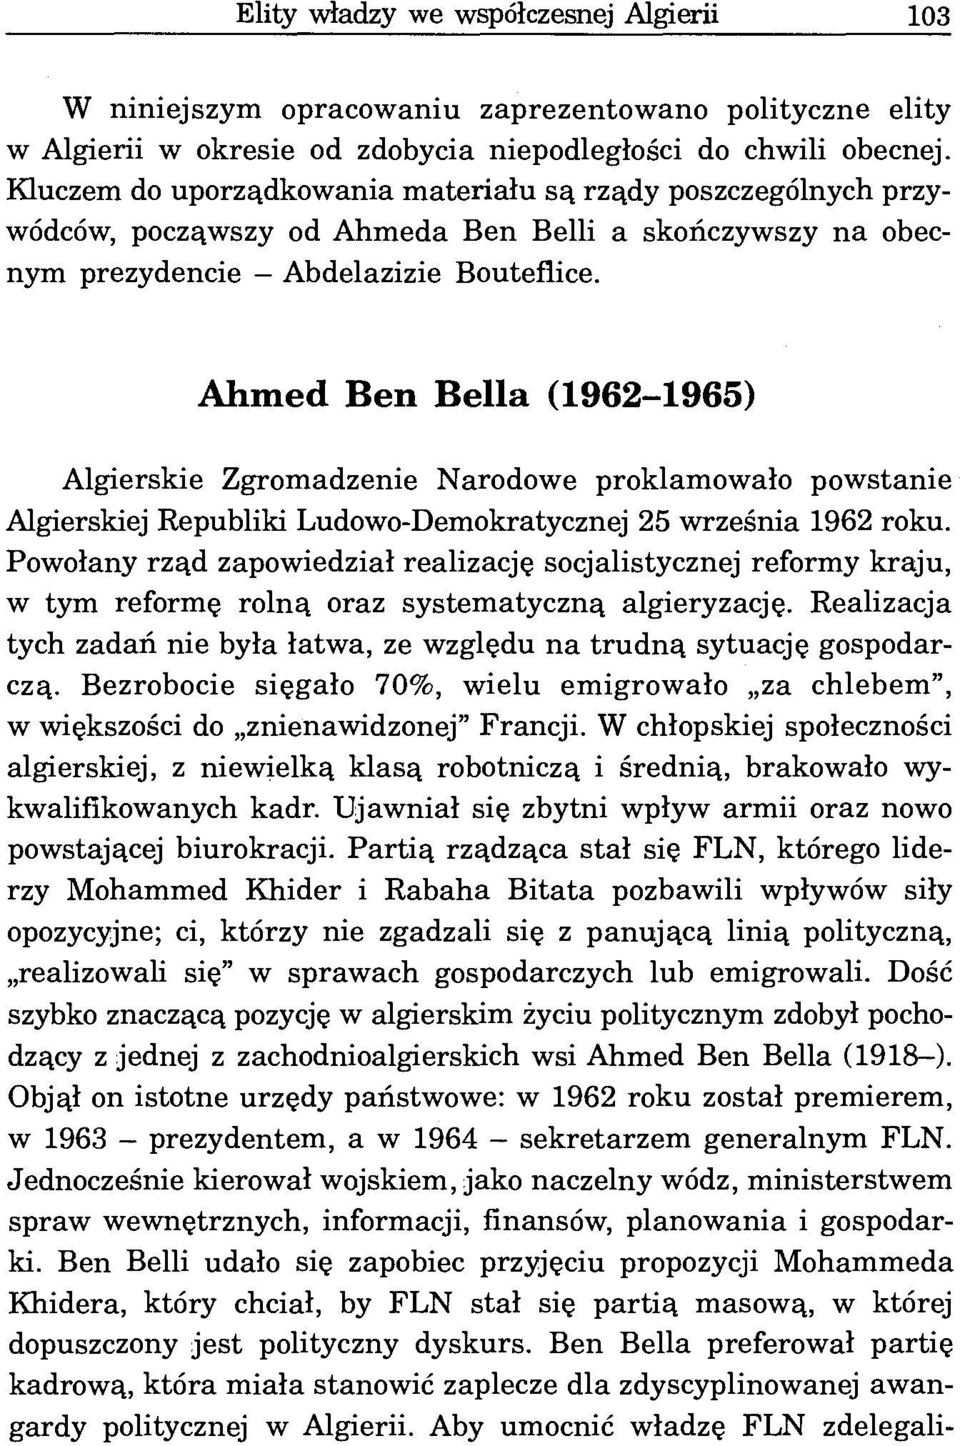 Ahmed Ben Bella (1962-1965) Algierskie Zgromadzenie Narodowe proklamowało powstanie Algierskiej Republiki Ludowo-Demokratycznej 25 września 1962 roku.